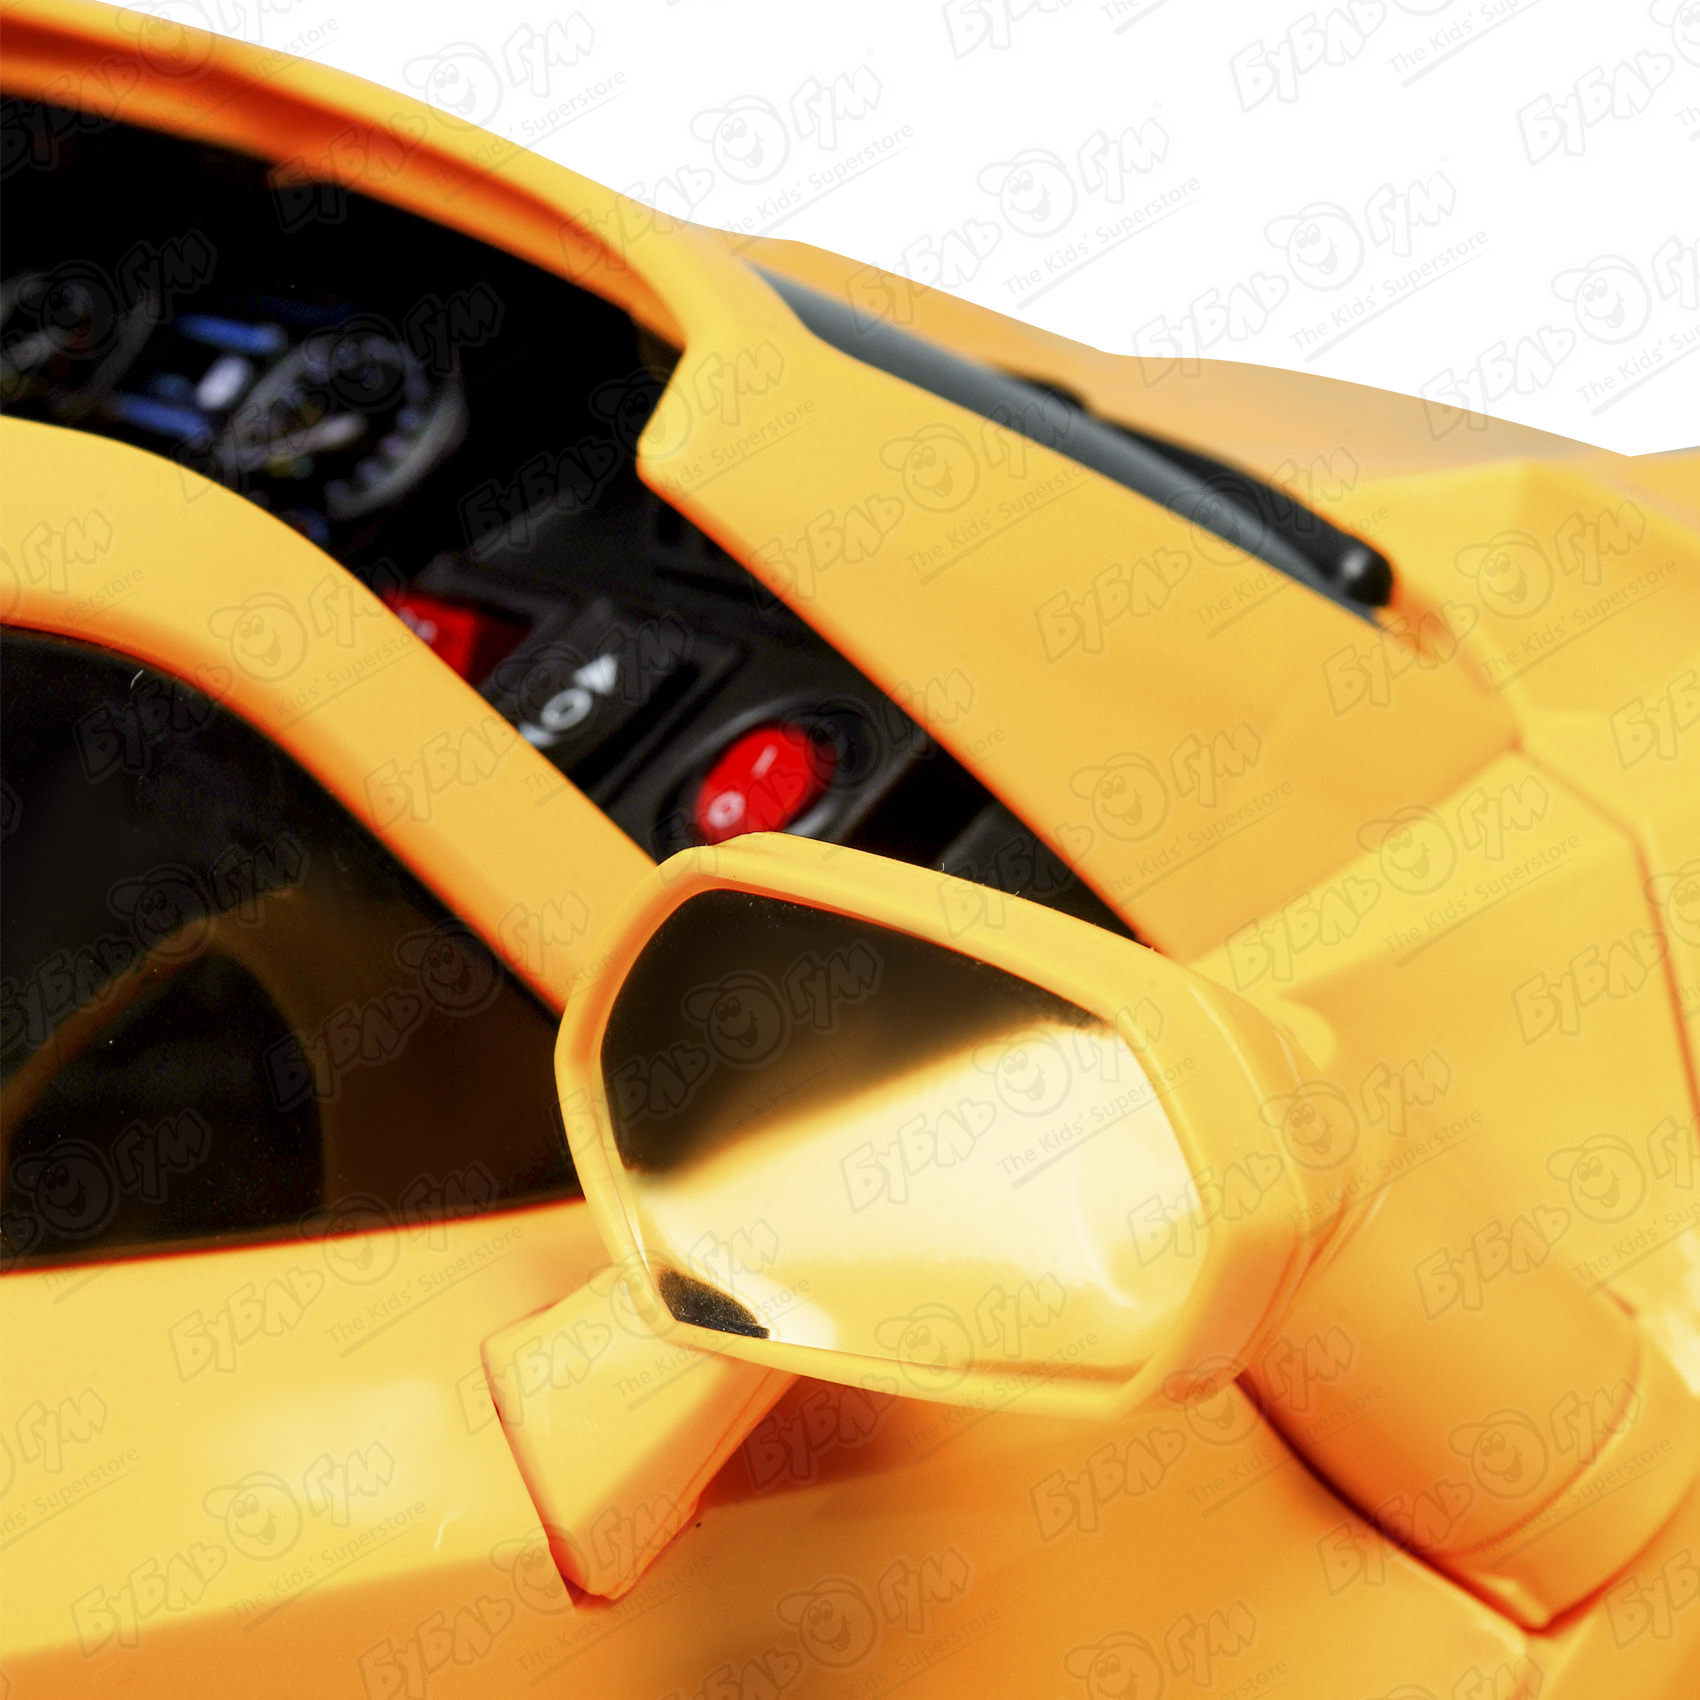 Автомобиль гоночный аккумуляторный р/у, цвет желтый - фото 12